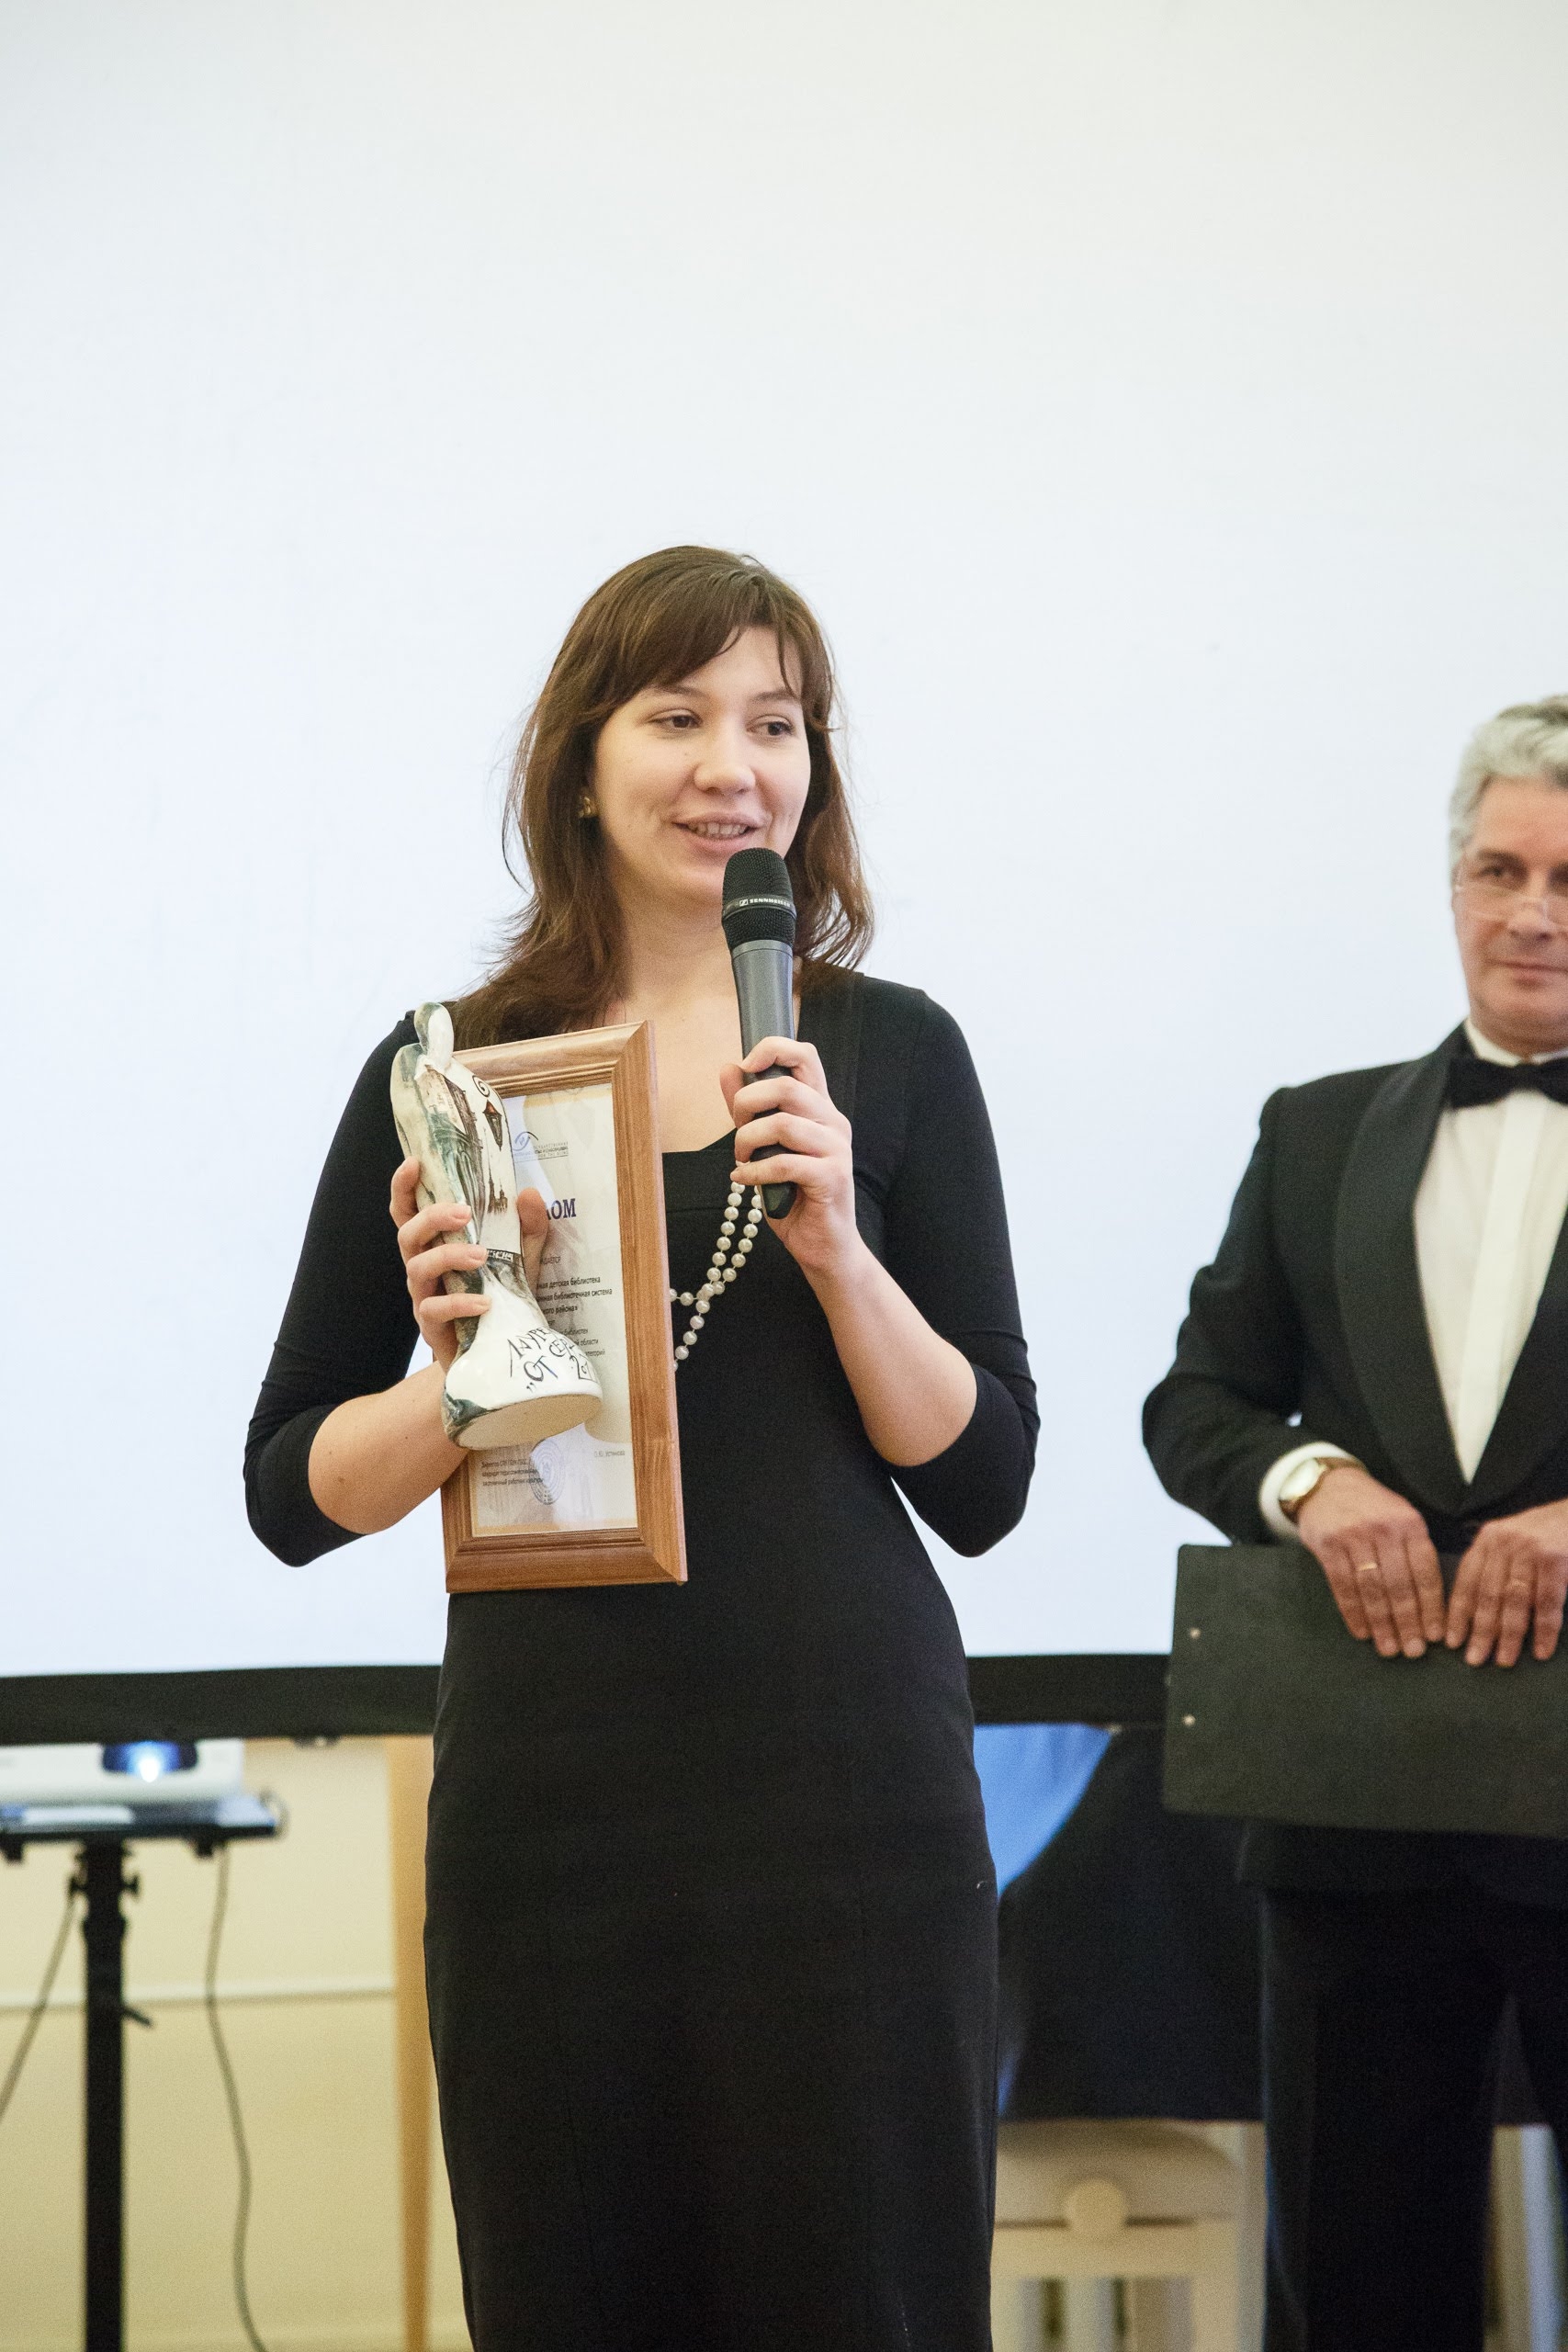 На вертикальной фотографии на переднем плане стоит женщина, которая держит в правой руке статуэтку и диплом победителя, в левой руке - микрофон. На заднем плане расположен белый экран.